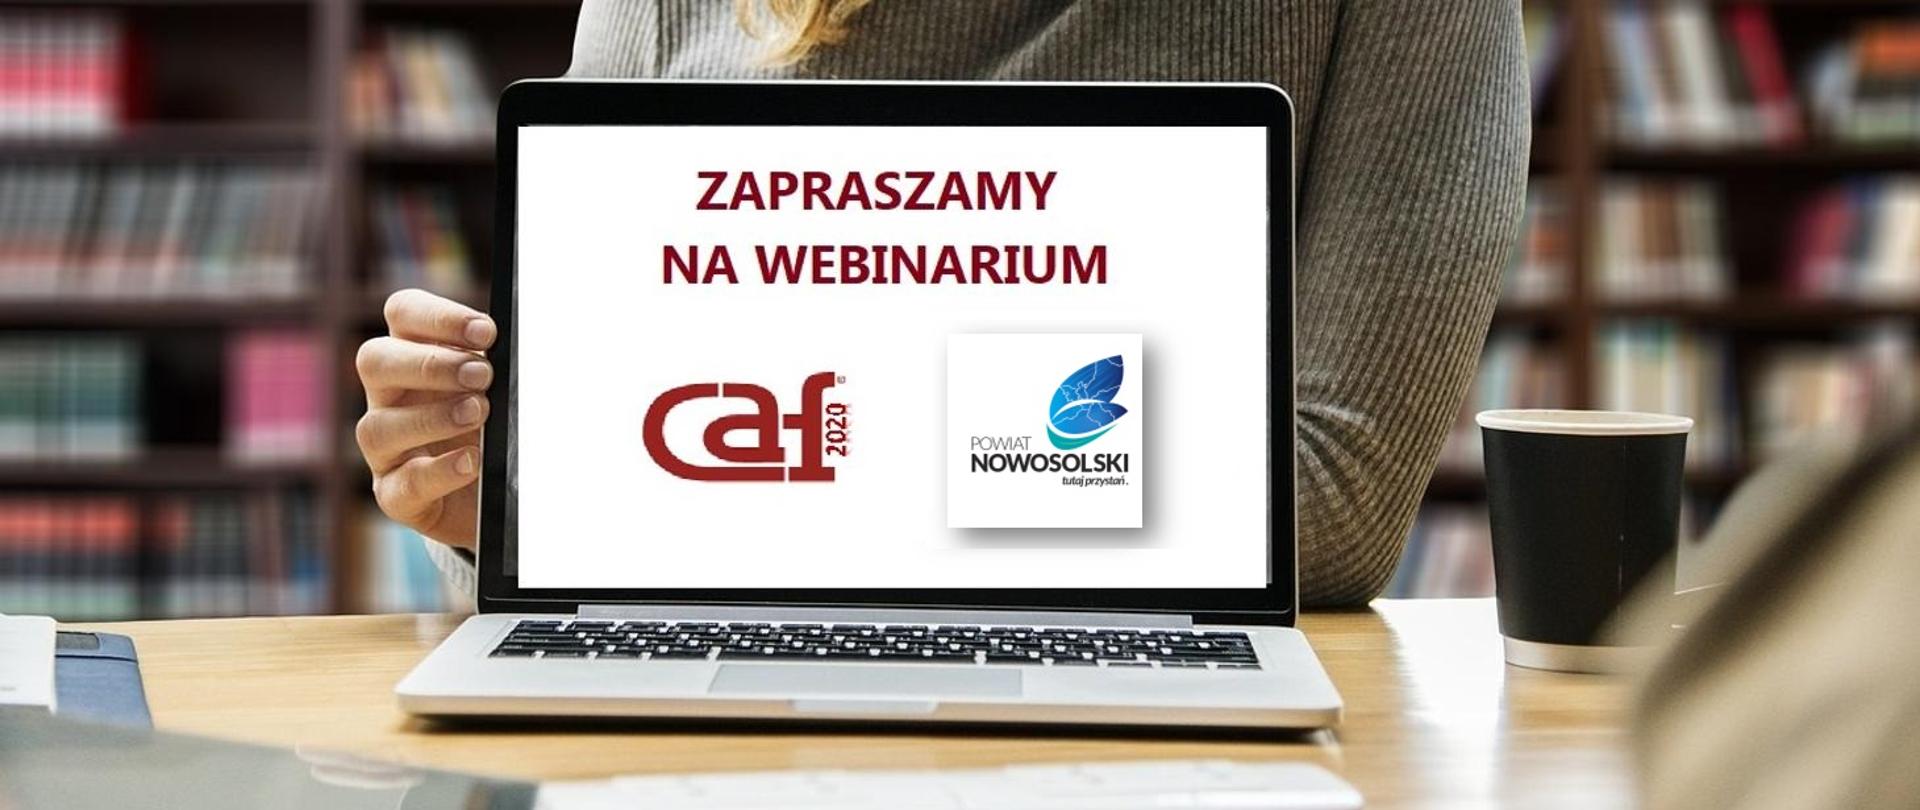 Zapraszamy na webinarium logo CAF i Powiatu Nowosolskiego